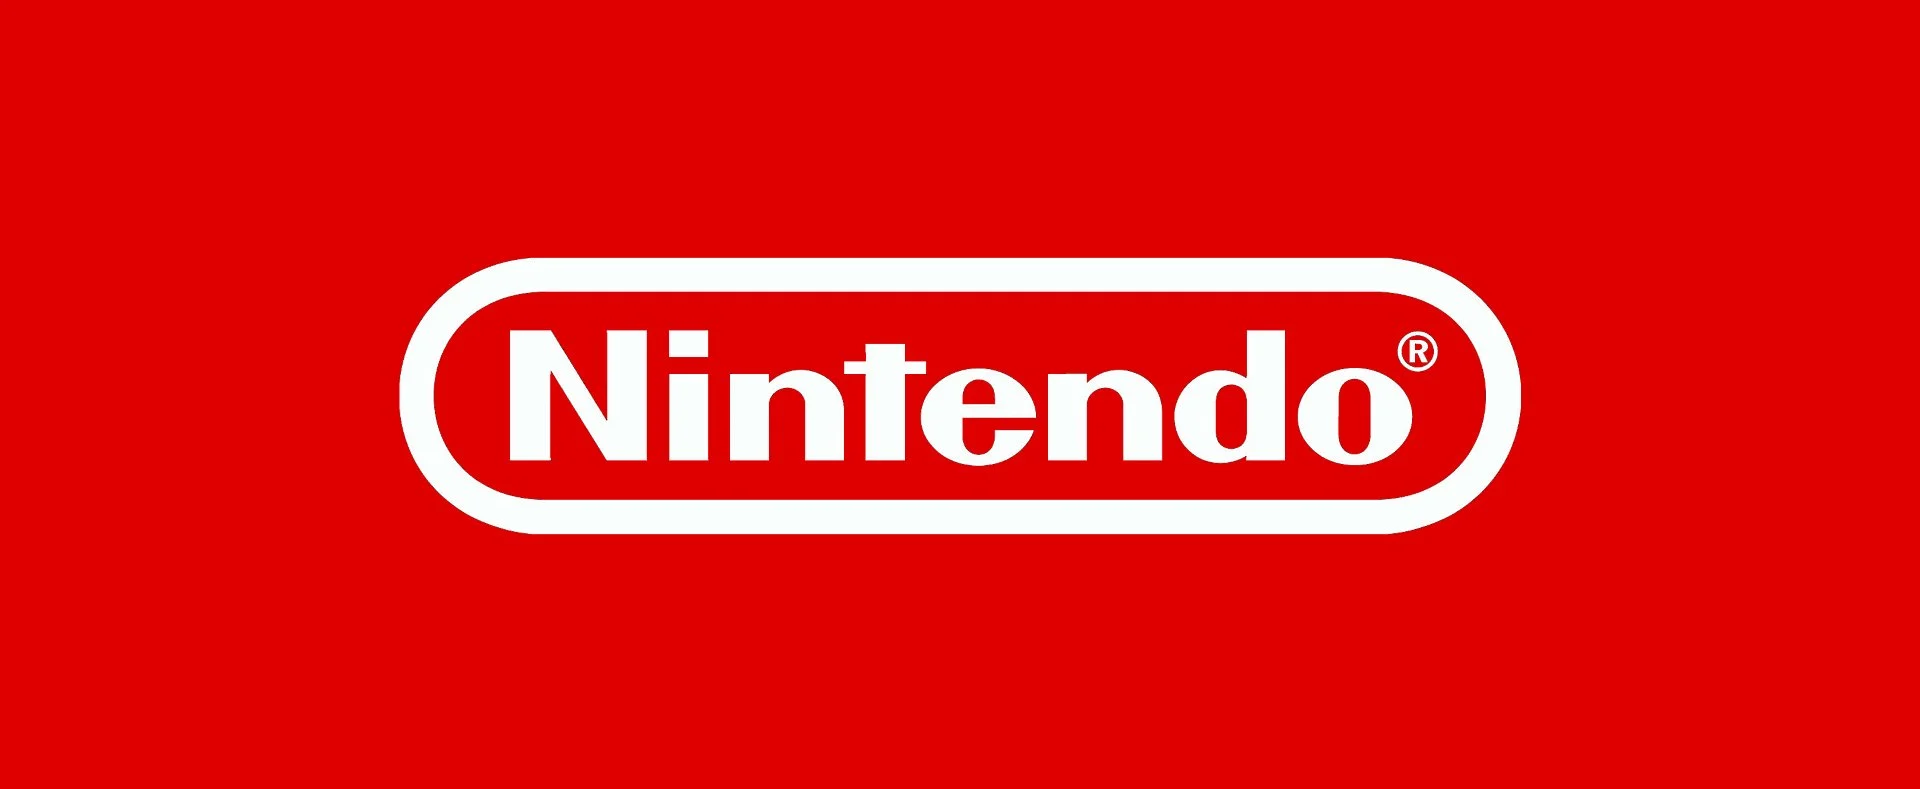 Майкл Пактер: если Nintendo NX будет выделяться, ее ждет провал - фото 1